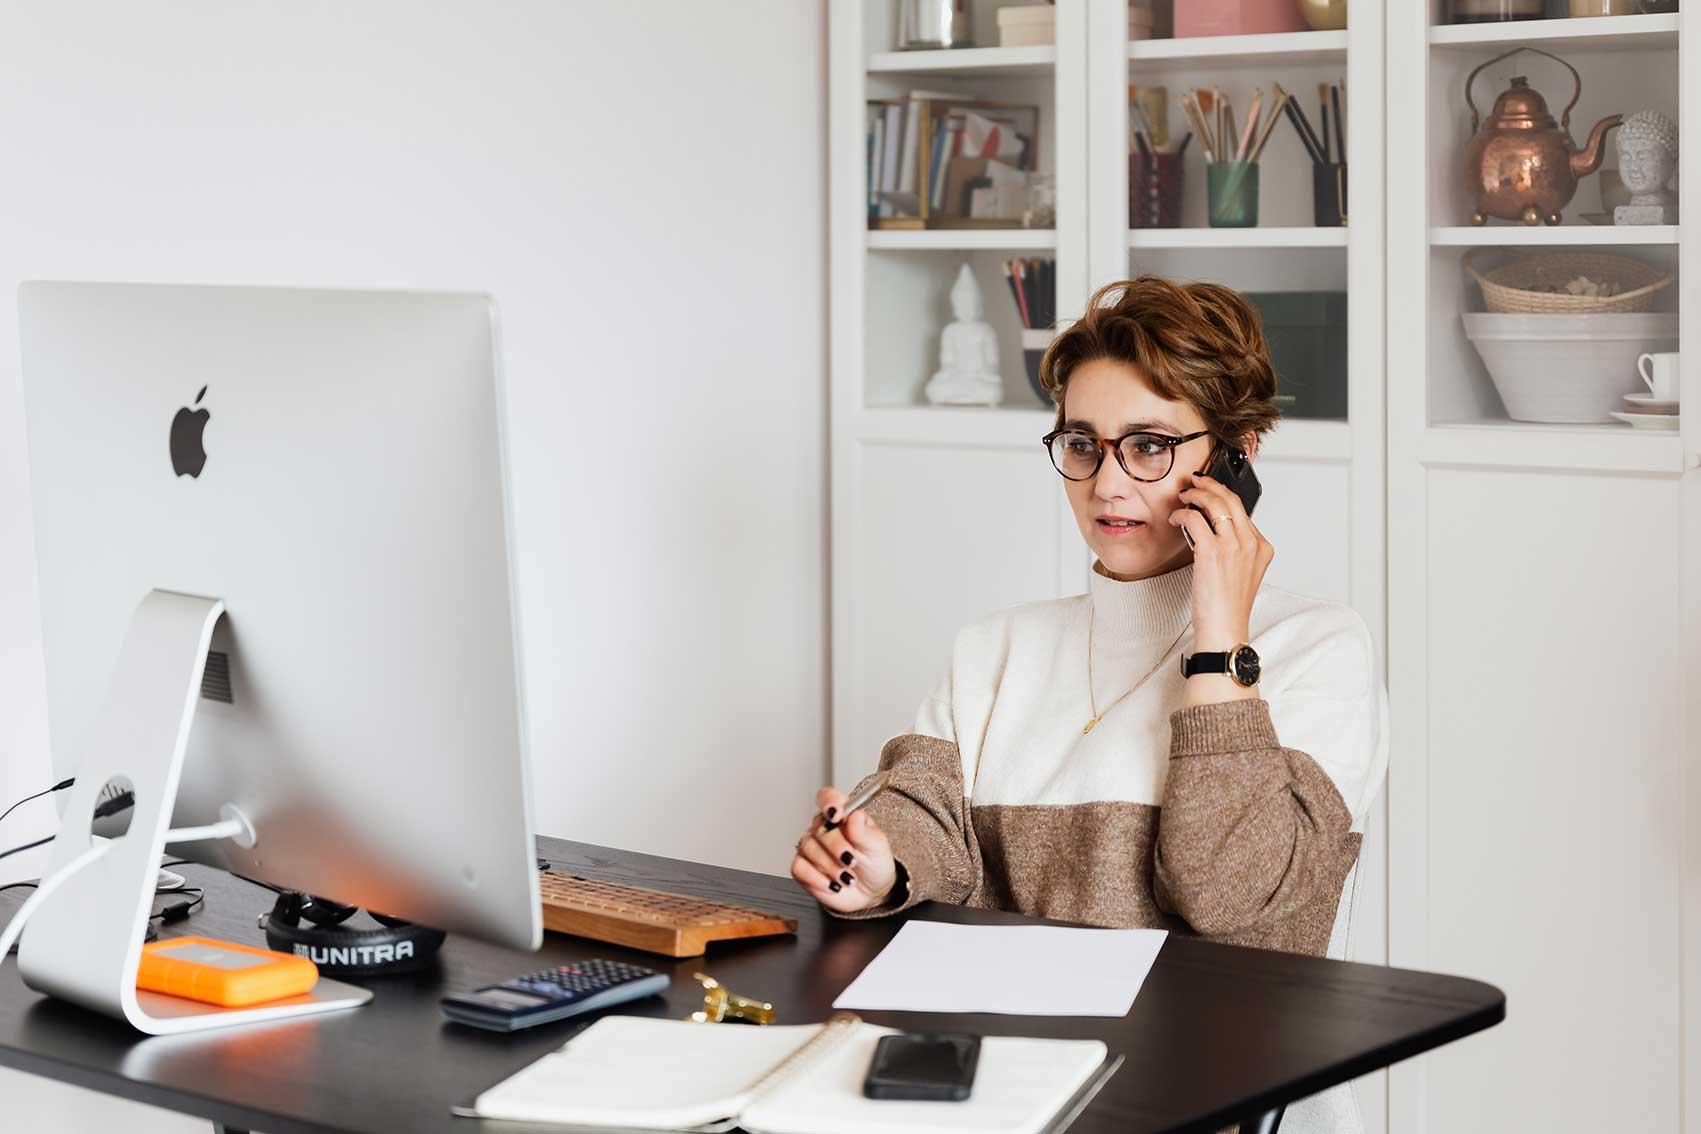 zu sehen ist eine Frau am Schreibtisch vor ihrem PC, die telefoniert. Das Thema ist der Pretext als Instrument für Social Engineering Angriffe. Bild: Pexels/Karolina Grabowska